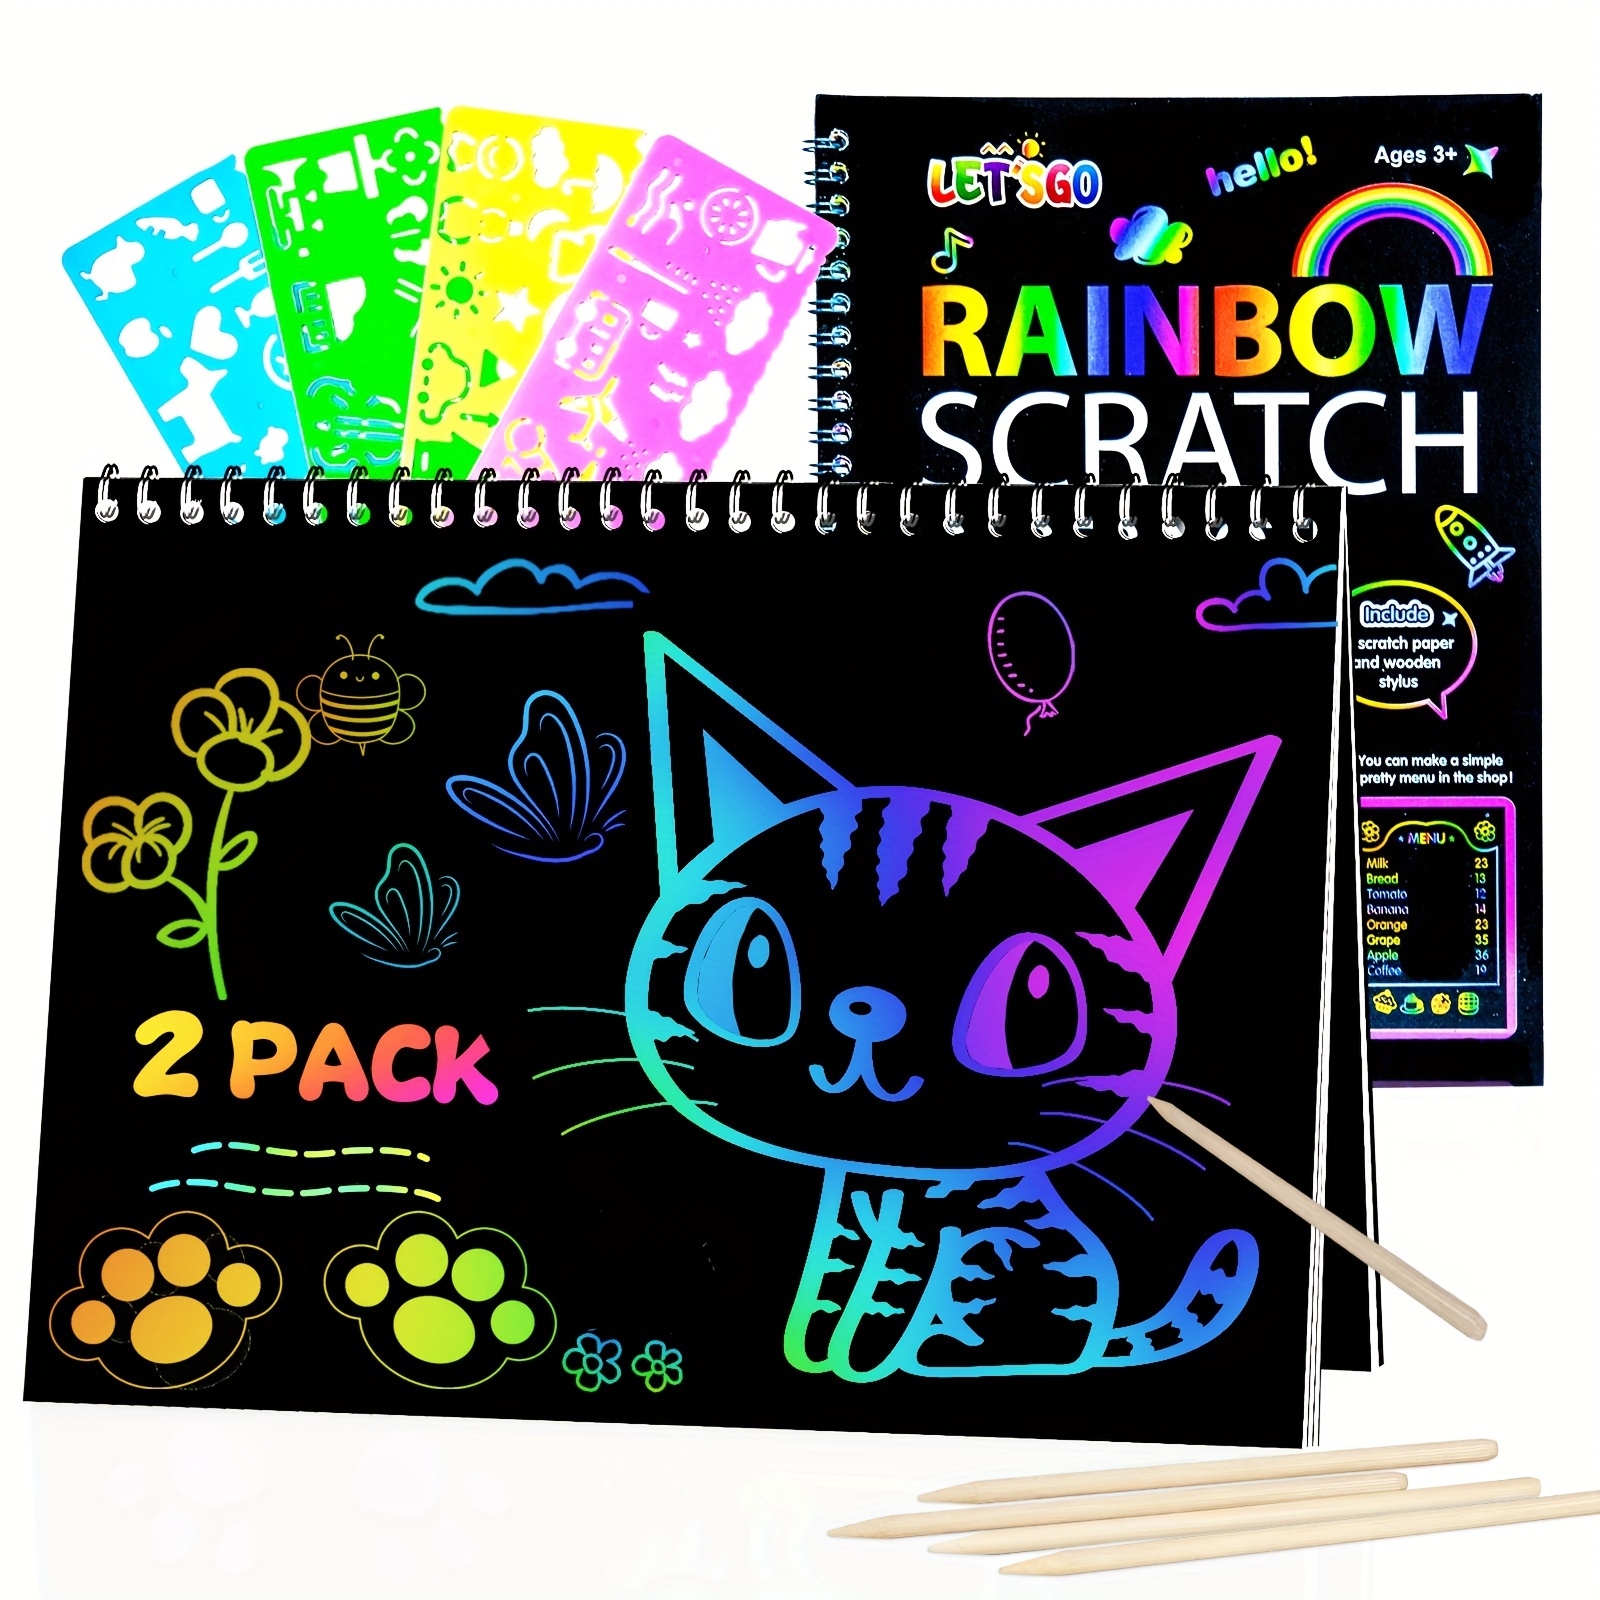 Juegos de papel para rascar arco iris: 60 piezas de papel mágico para  rascar manualidades kits de suministros para niños de 3 a 12 años de edad  para